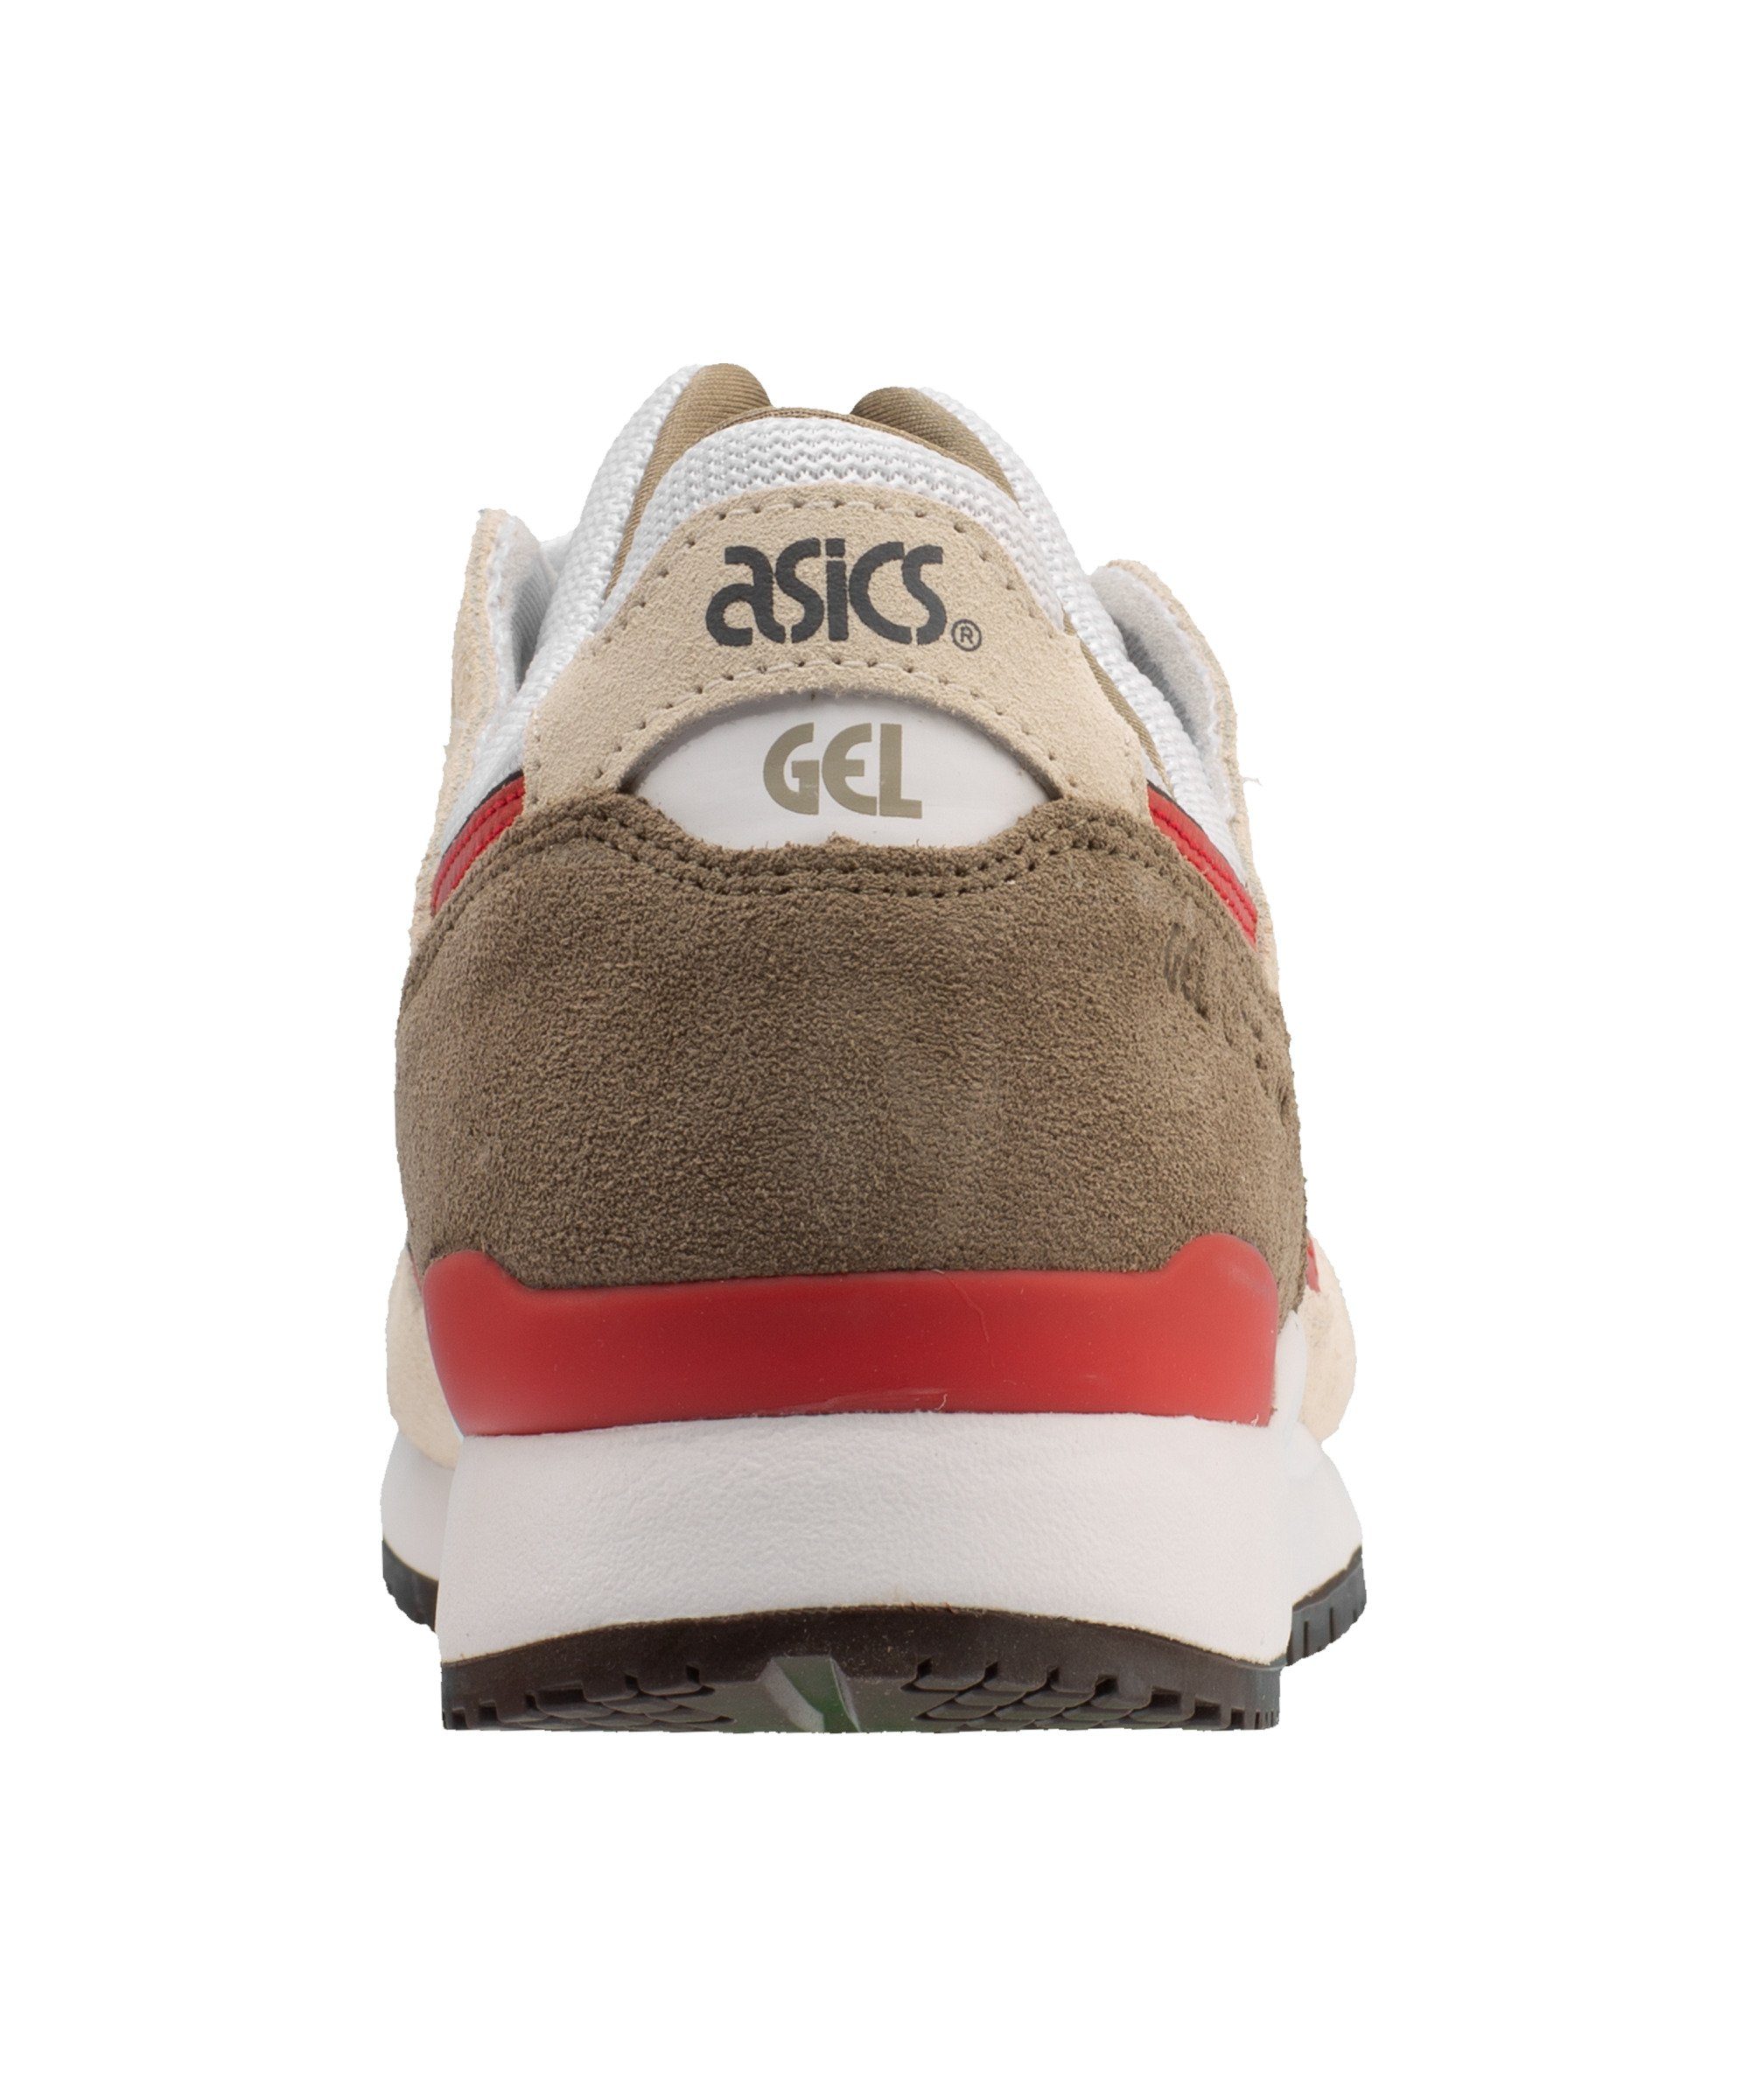 Asics OG Gel-Lyte graurot III Sneaker